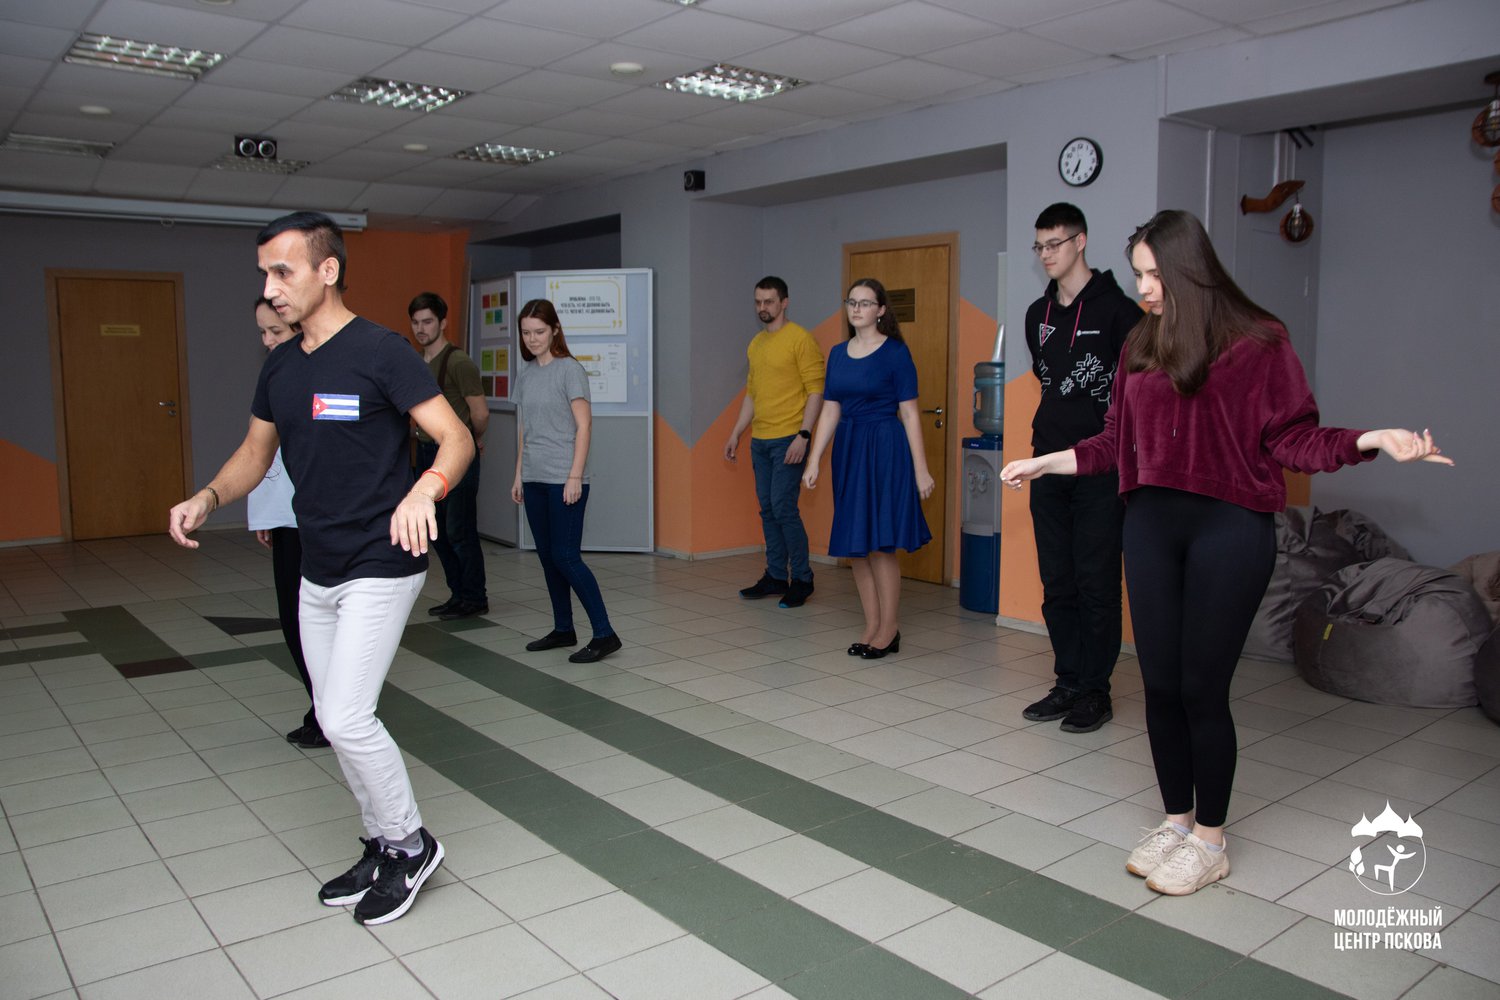 Псковский городской молодёжный центр приглашает молодёжь посетить тематический клуб и обучиться парному танцу «Меренга».